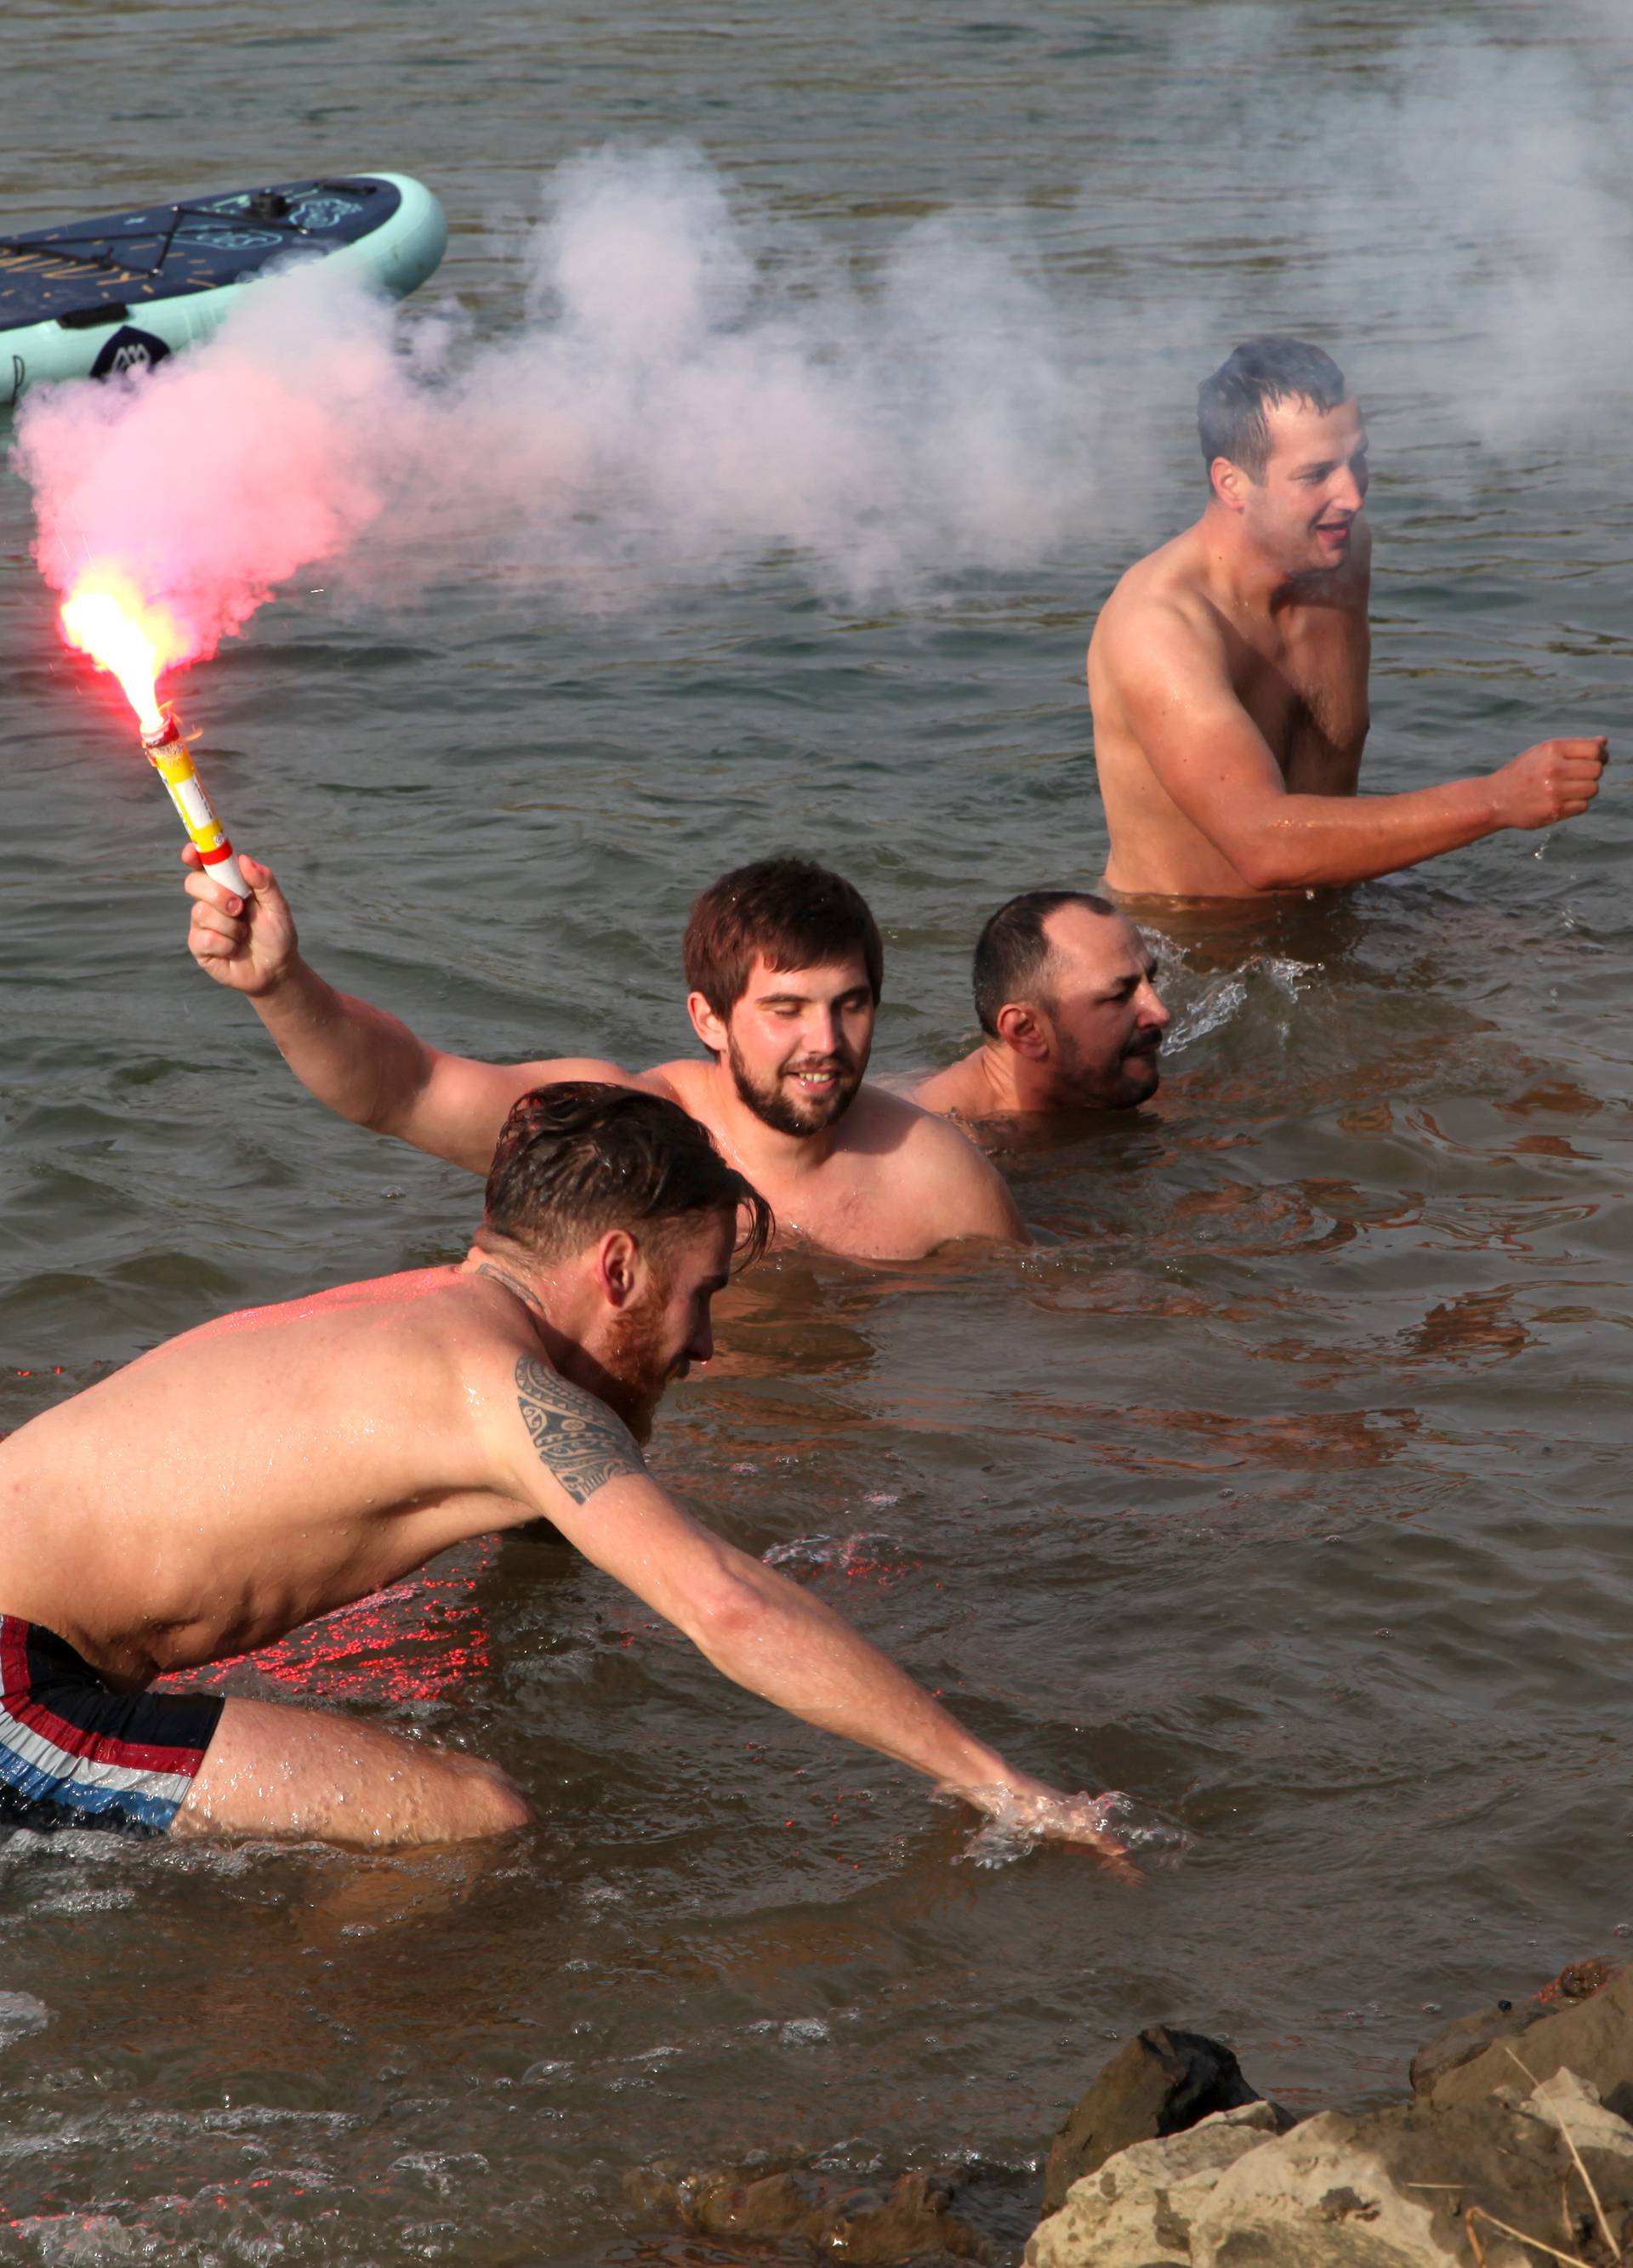 Sisak: Tradicionalno novogodiÅ¡nje kupanje u rijeci Kupi